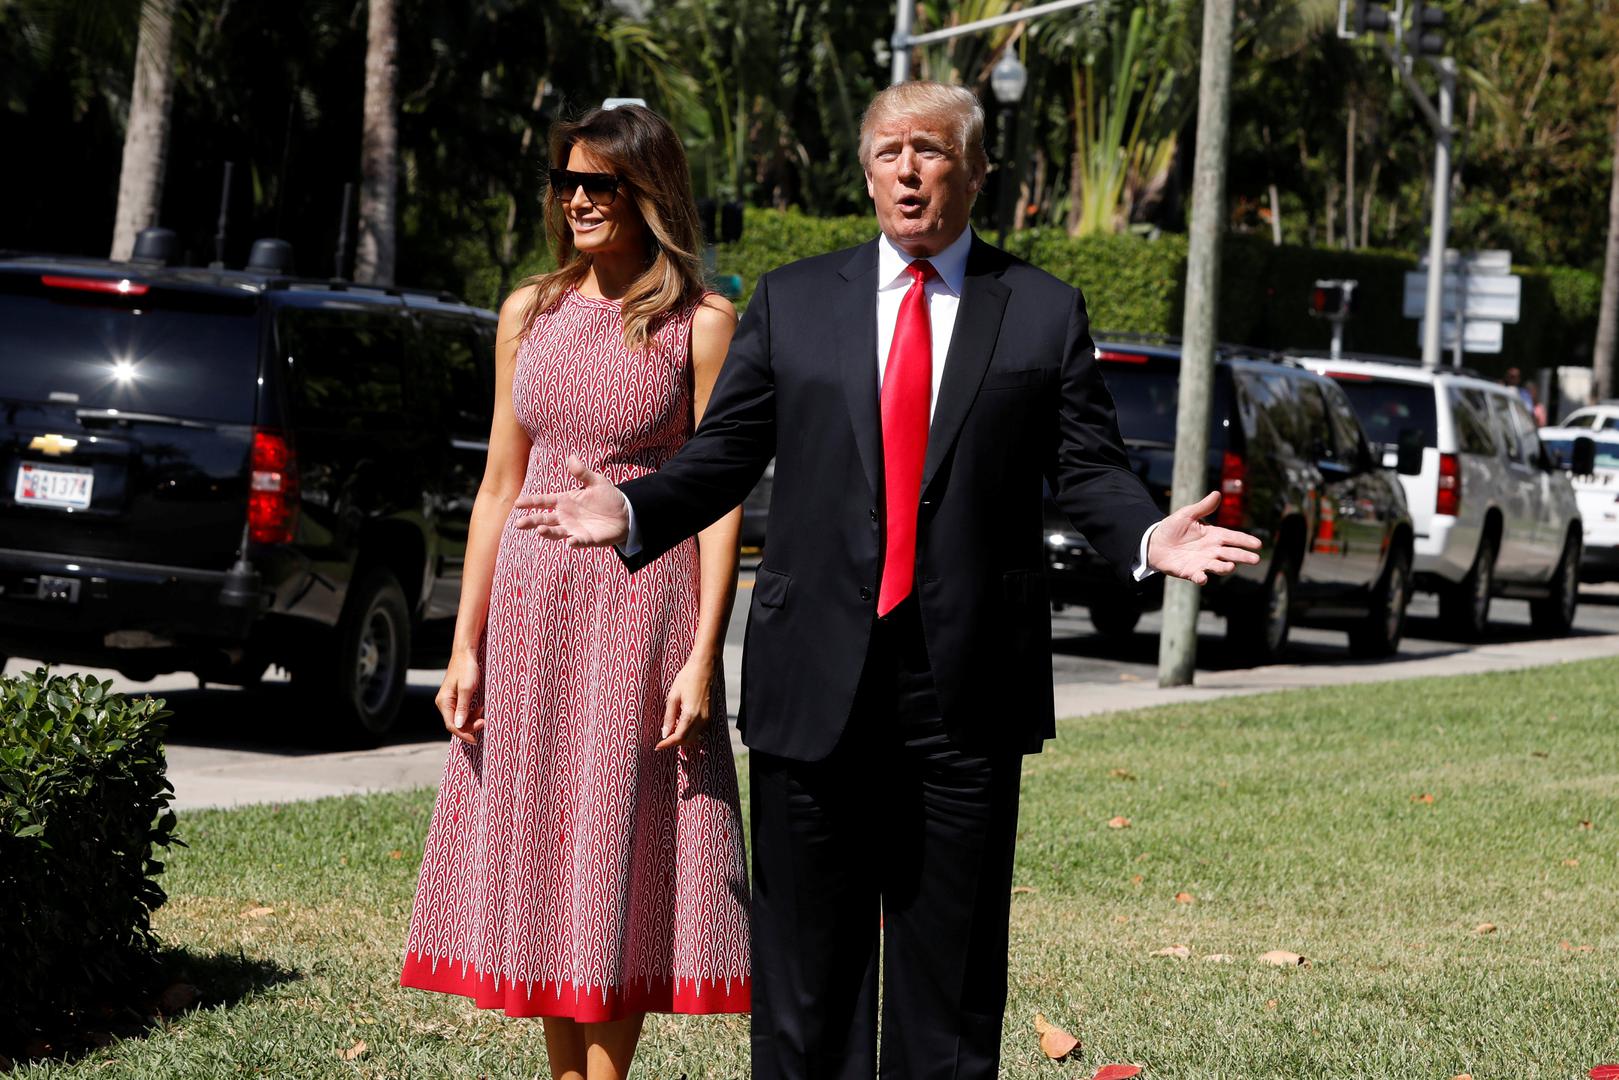  Zato su fotografije snimljene danas u Palm Beachu gdje predsjednički par provodi blagdane, iznenadile sve.